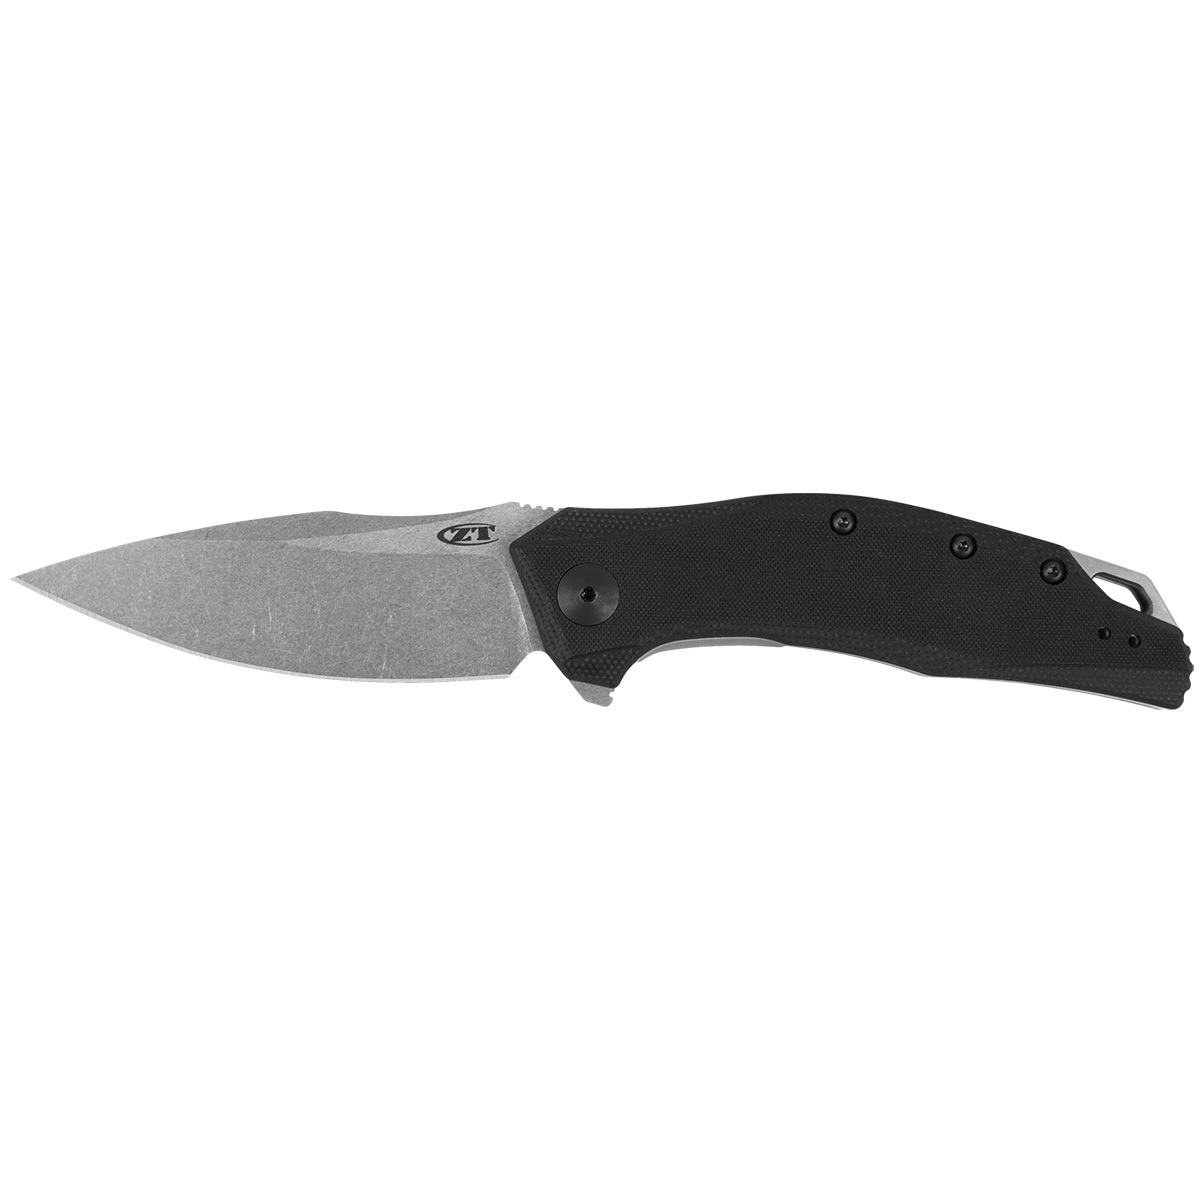 Складной нож Zero Tolerance 0357, сталь CPM 20CV, рукоять G10